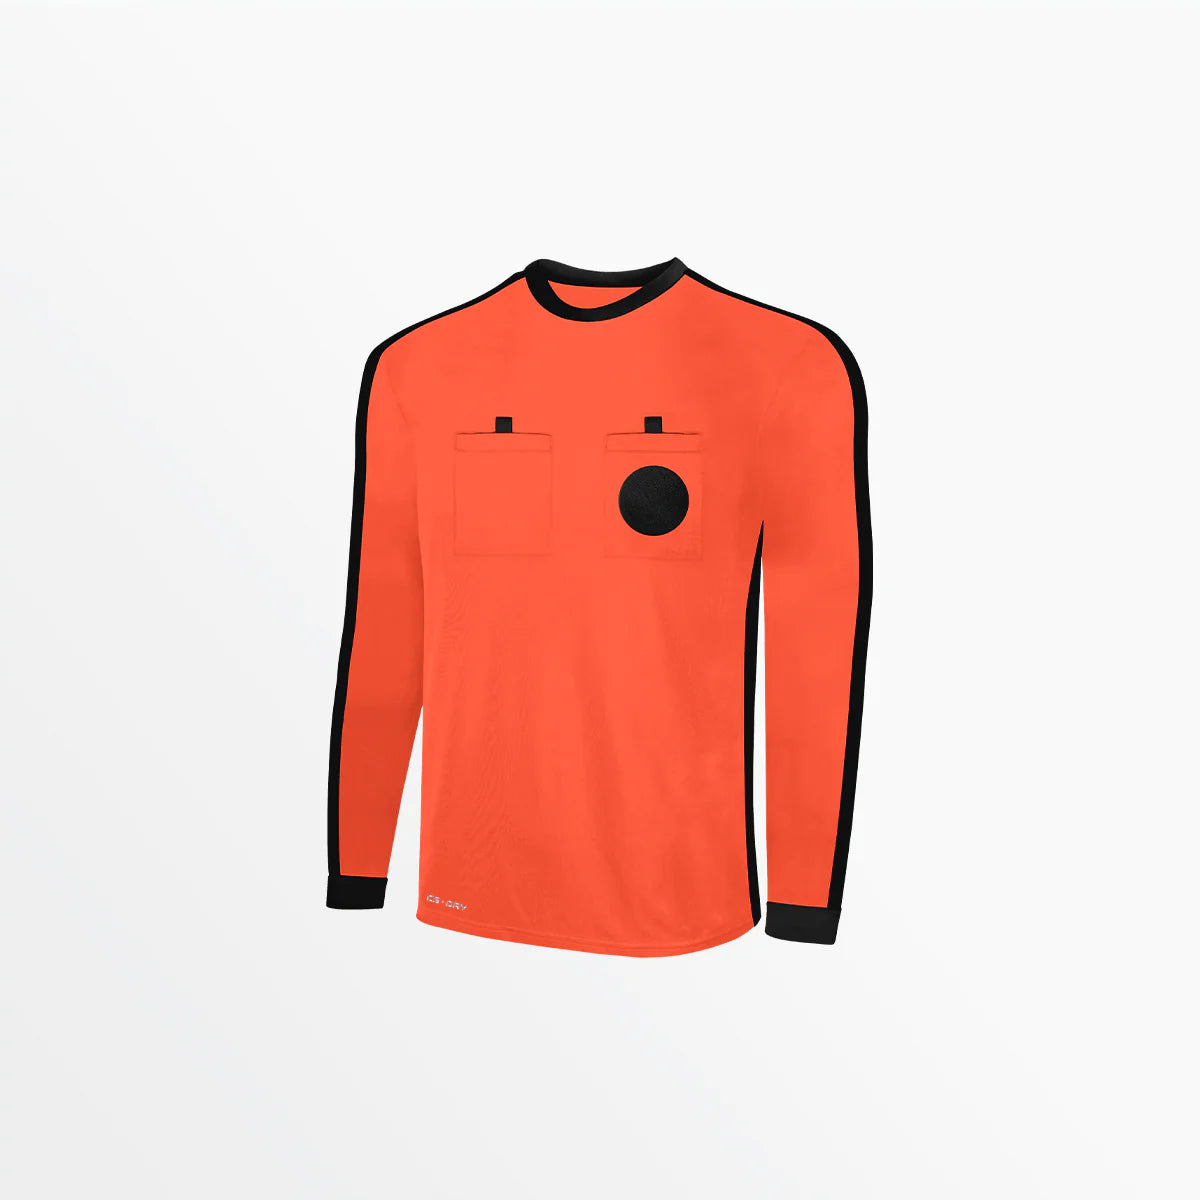 Manchester Goalkeeper Kit Orange / Black